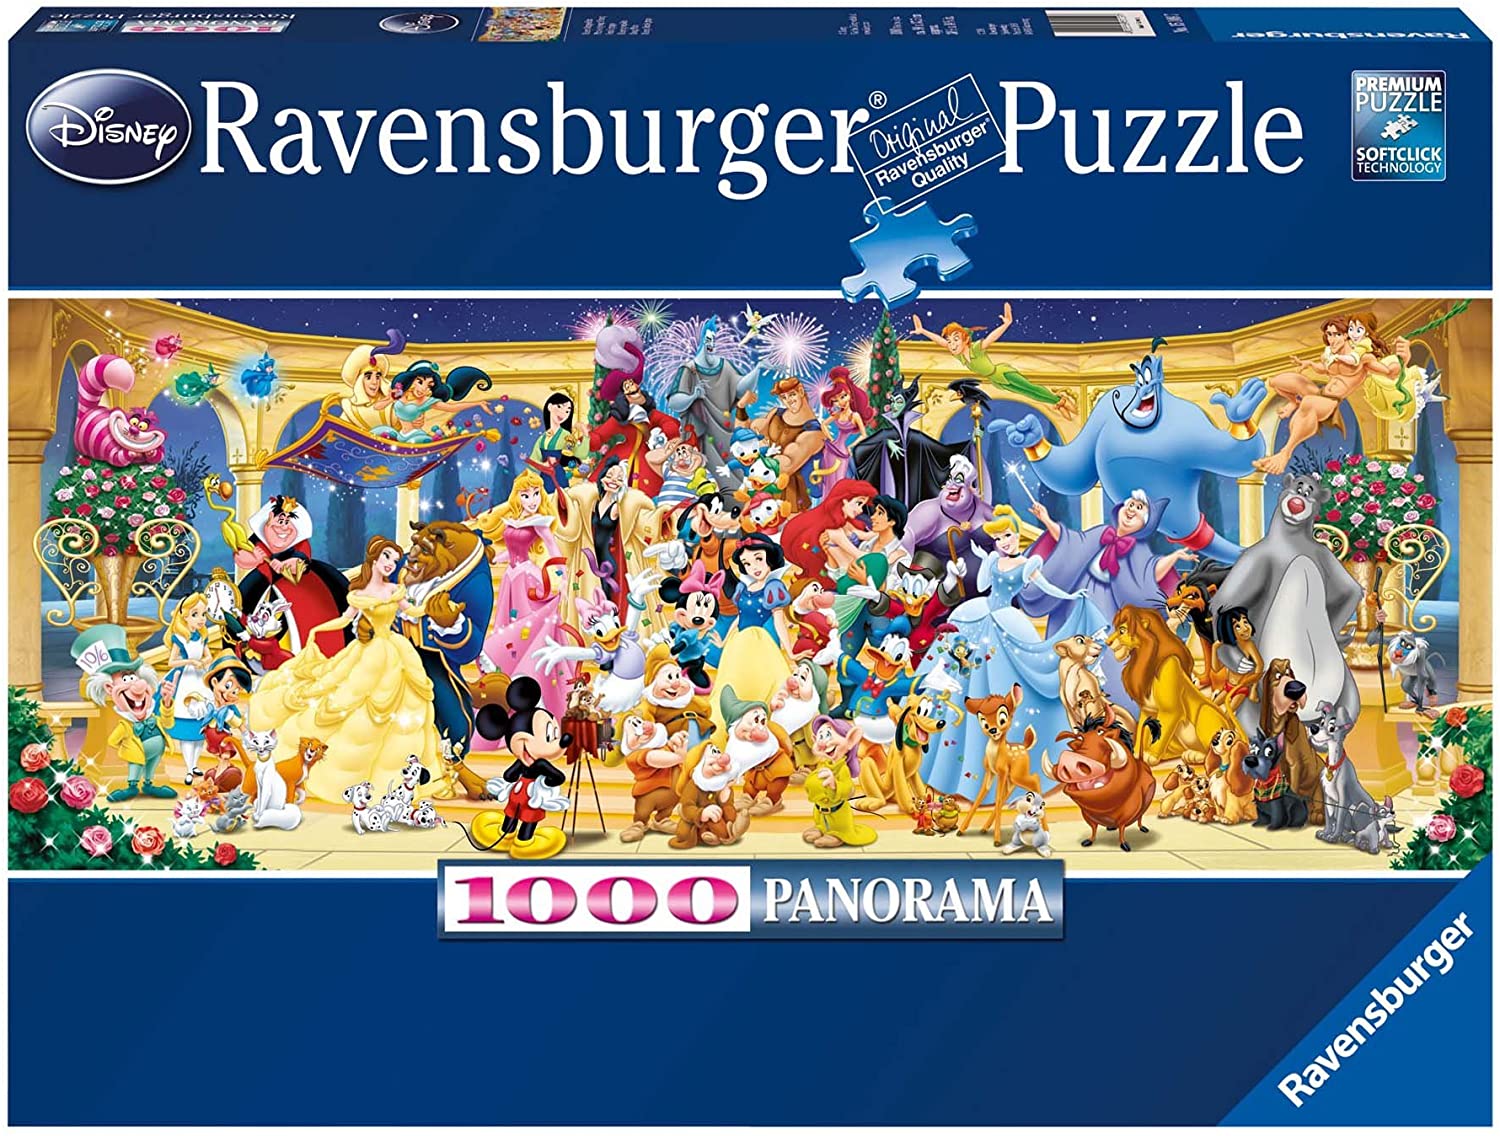 1000 Panorama Piece Jigsaw - Disney Group Photo